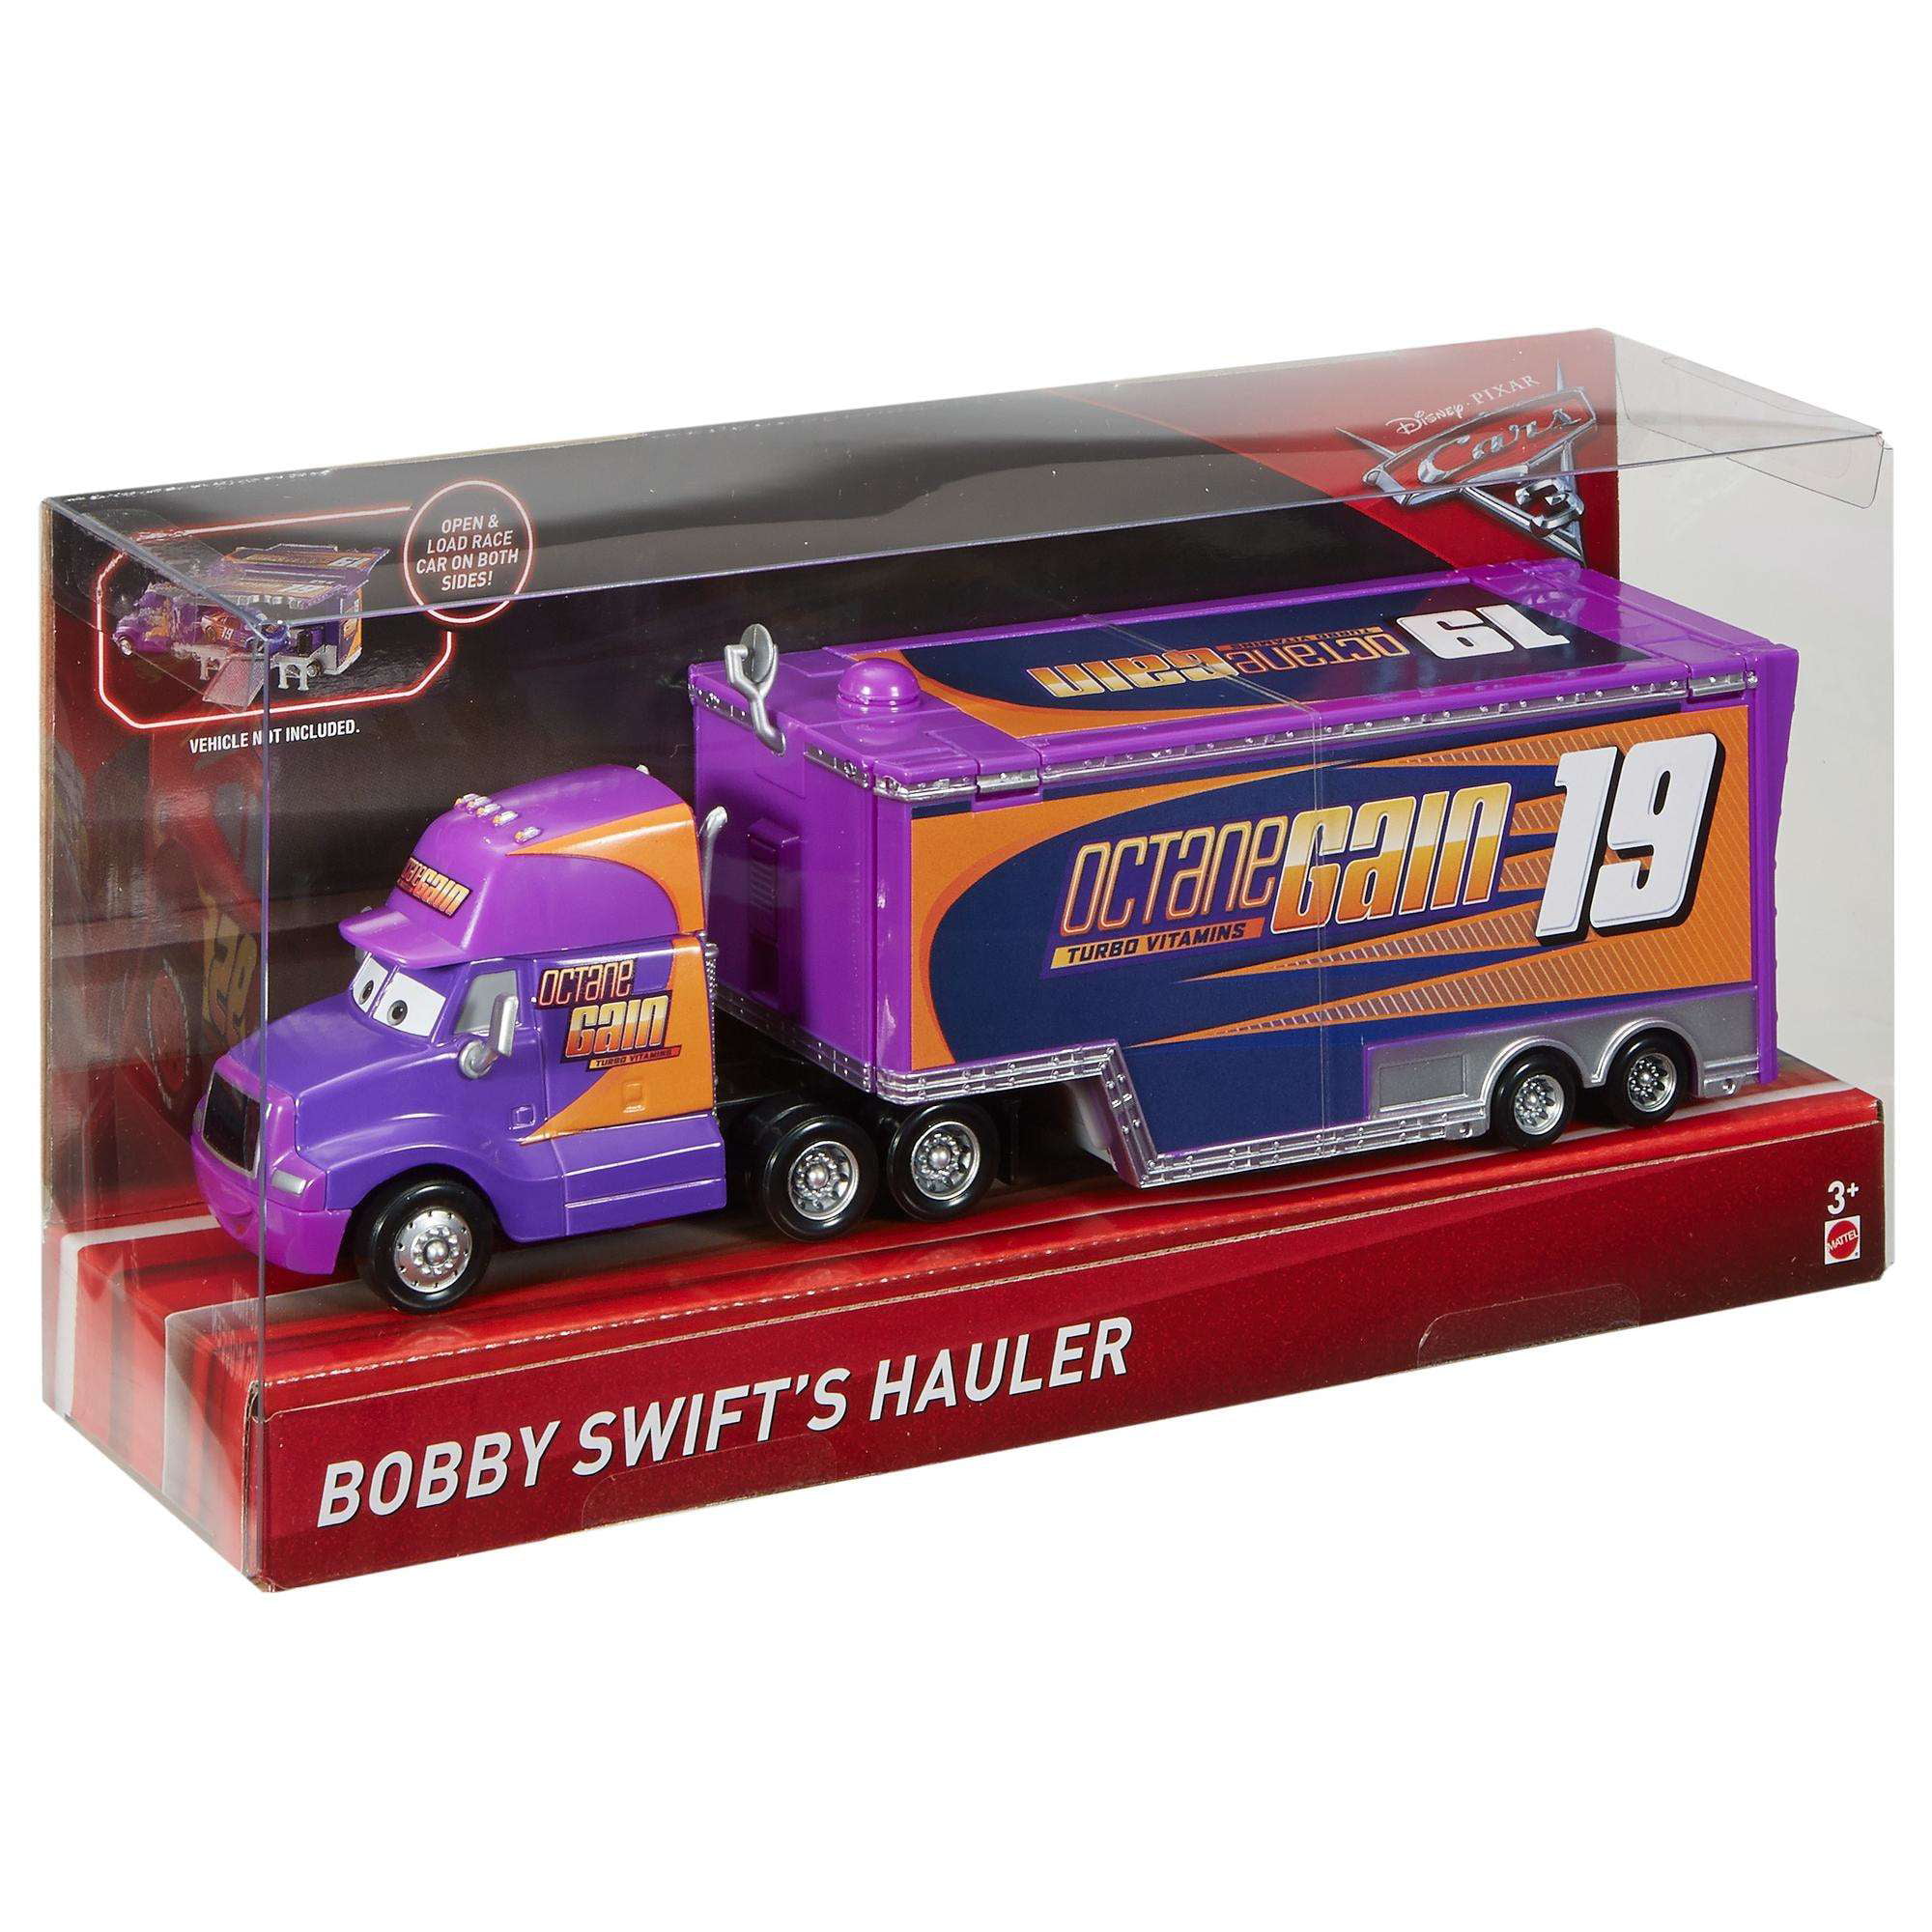 Octane Gain Mattel Toys FCL72 Disney Pixar Cars 3 Bobby Swift Hauler